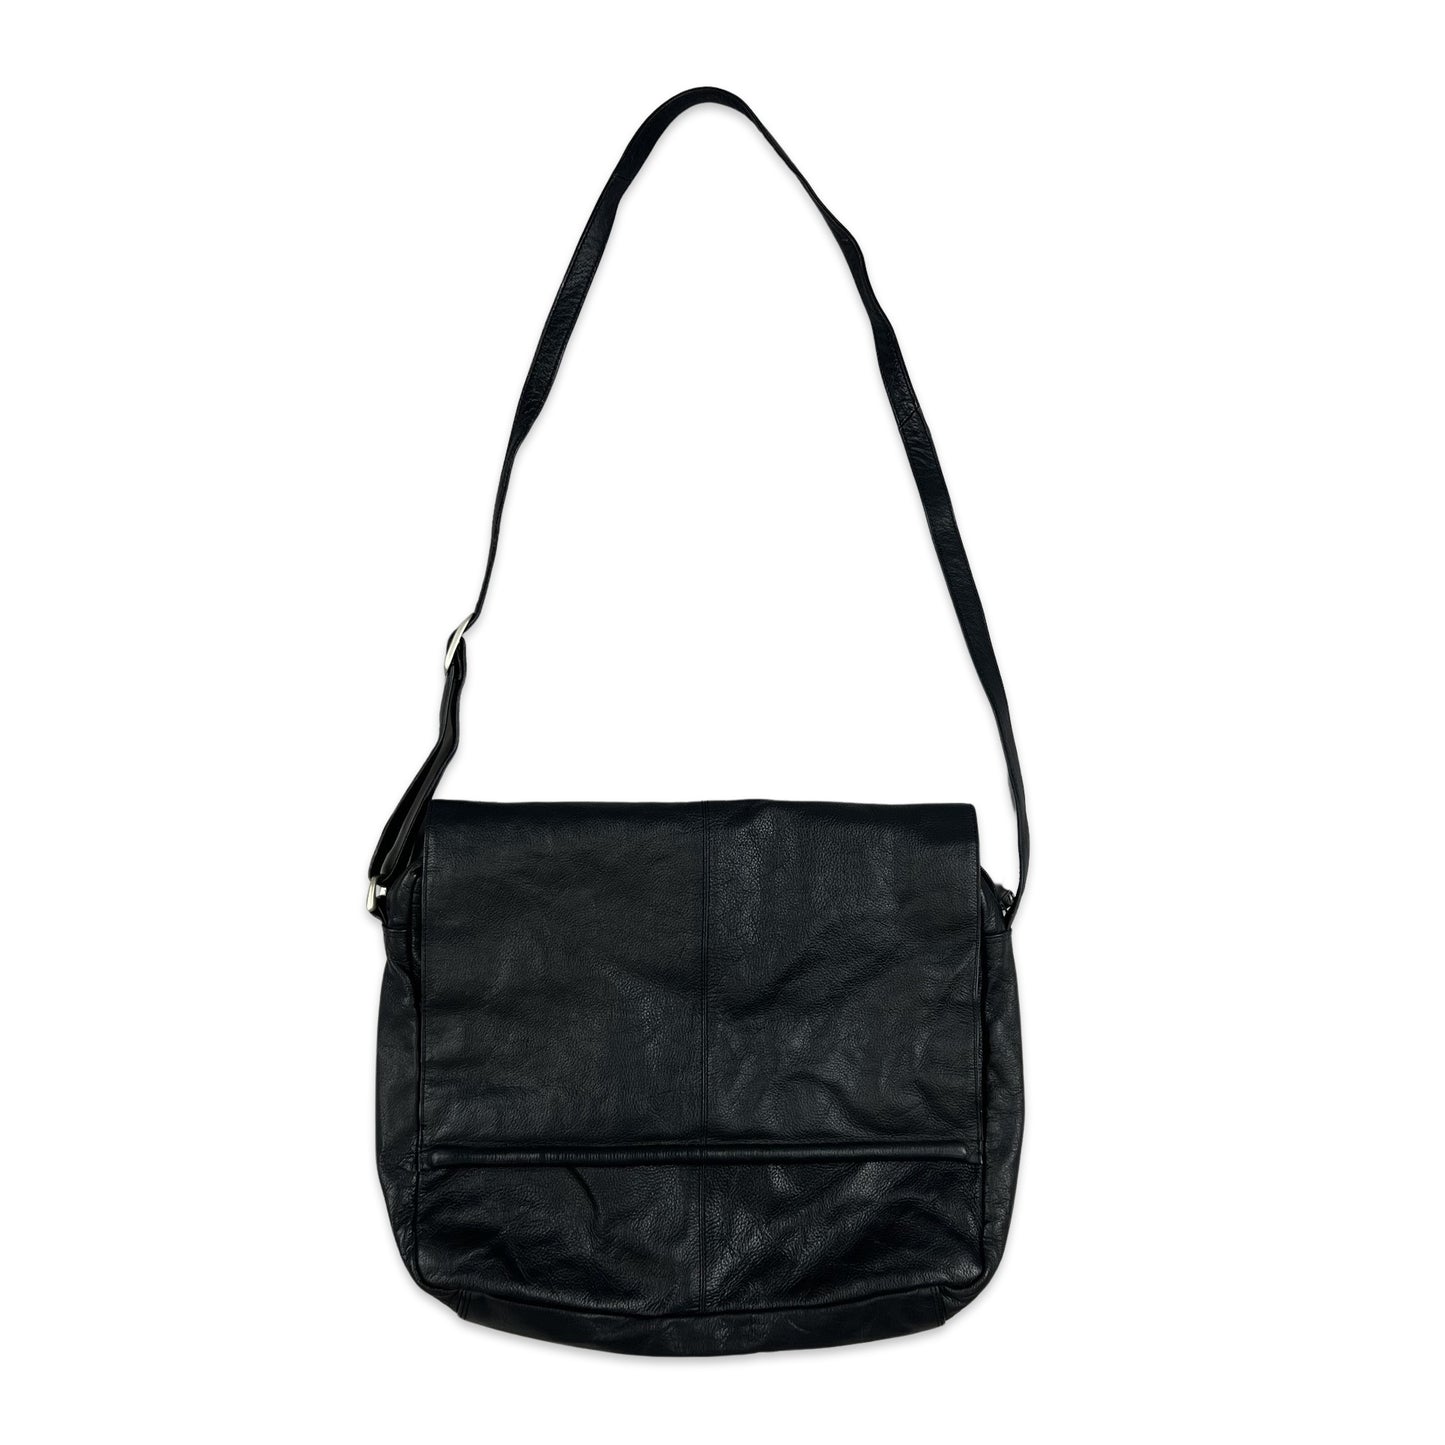 Vintage 90s Black Leather Satchel Messenger Bag